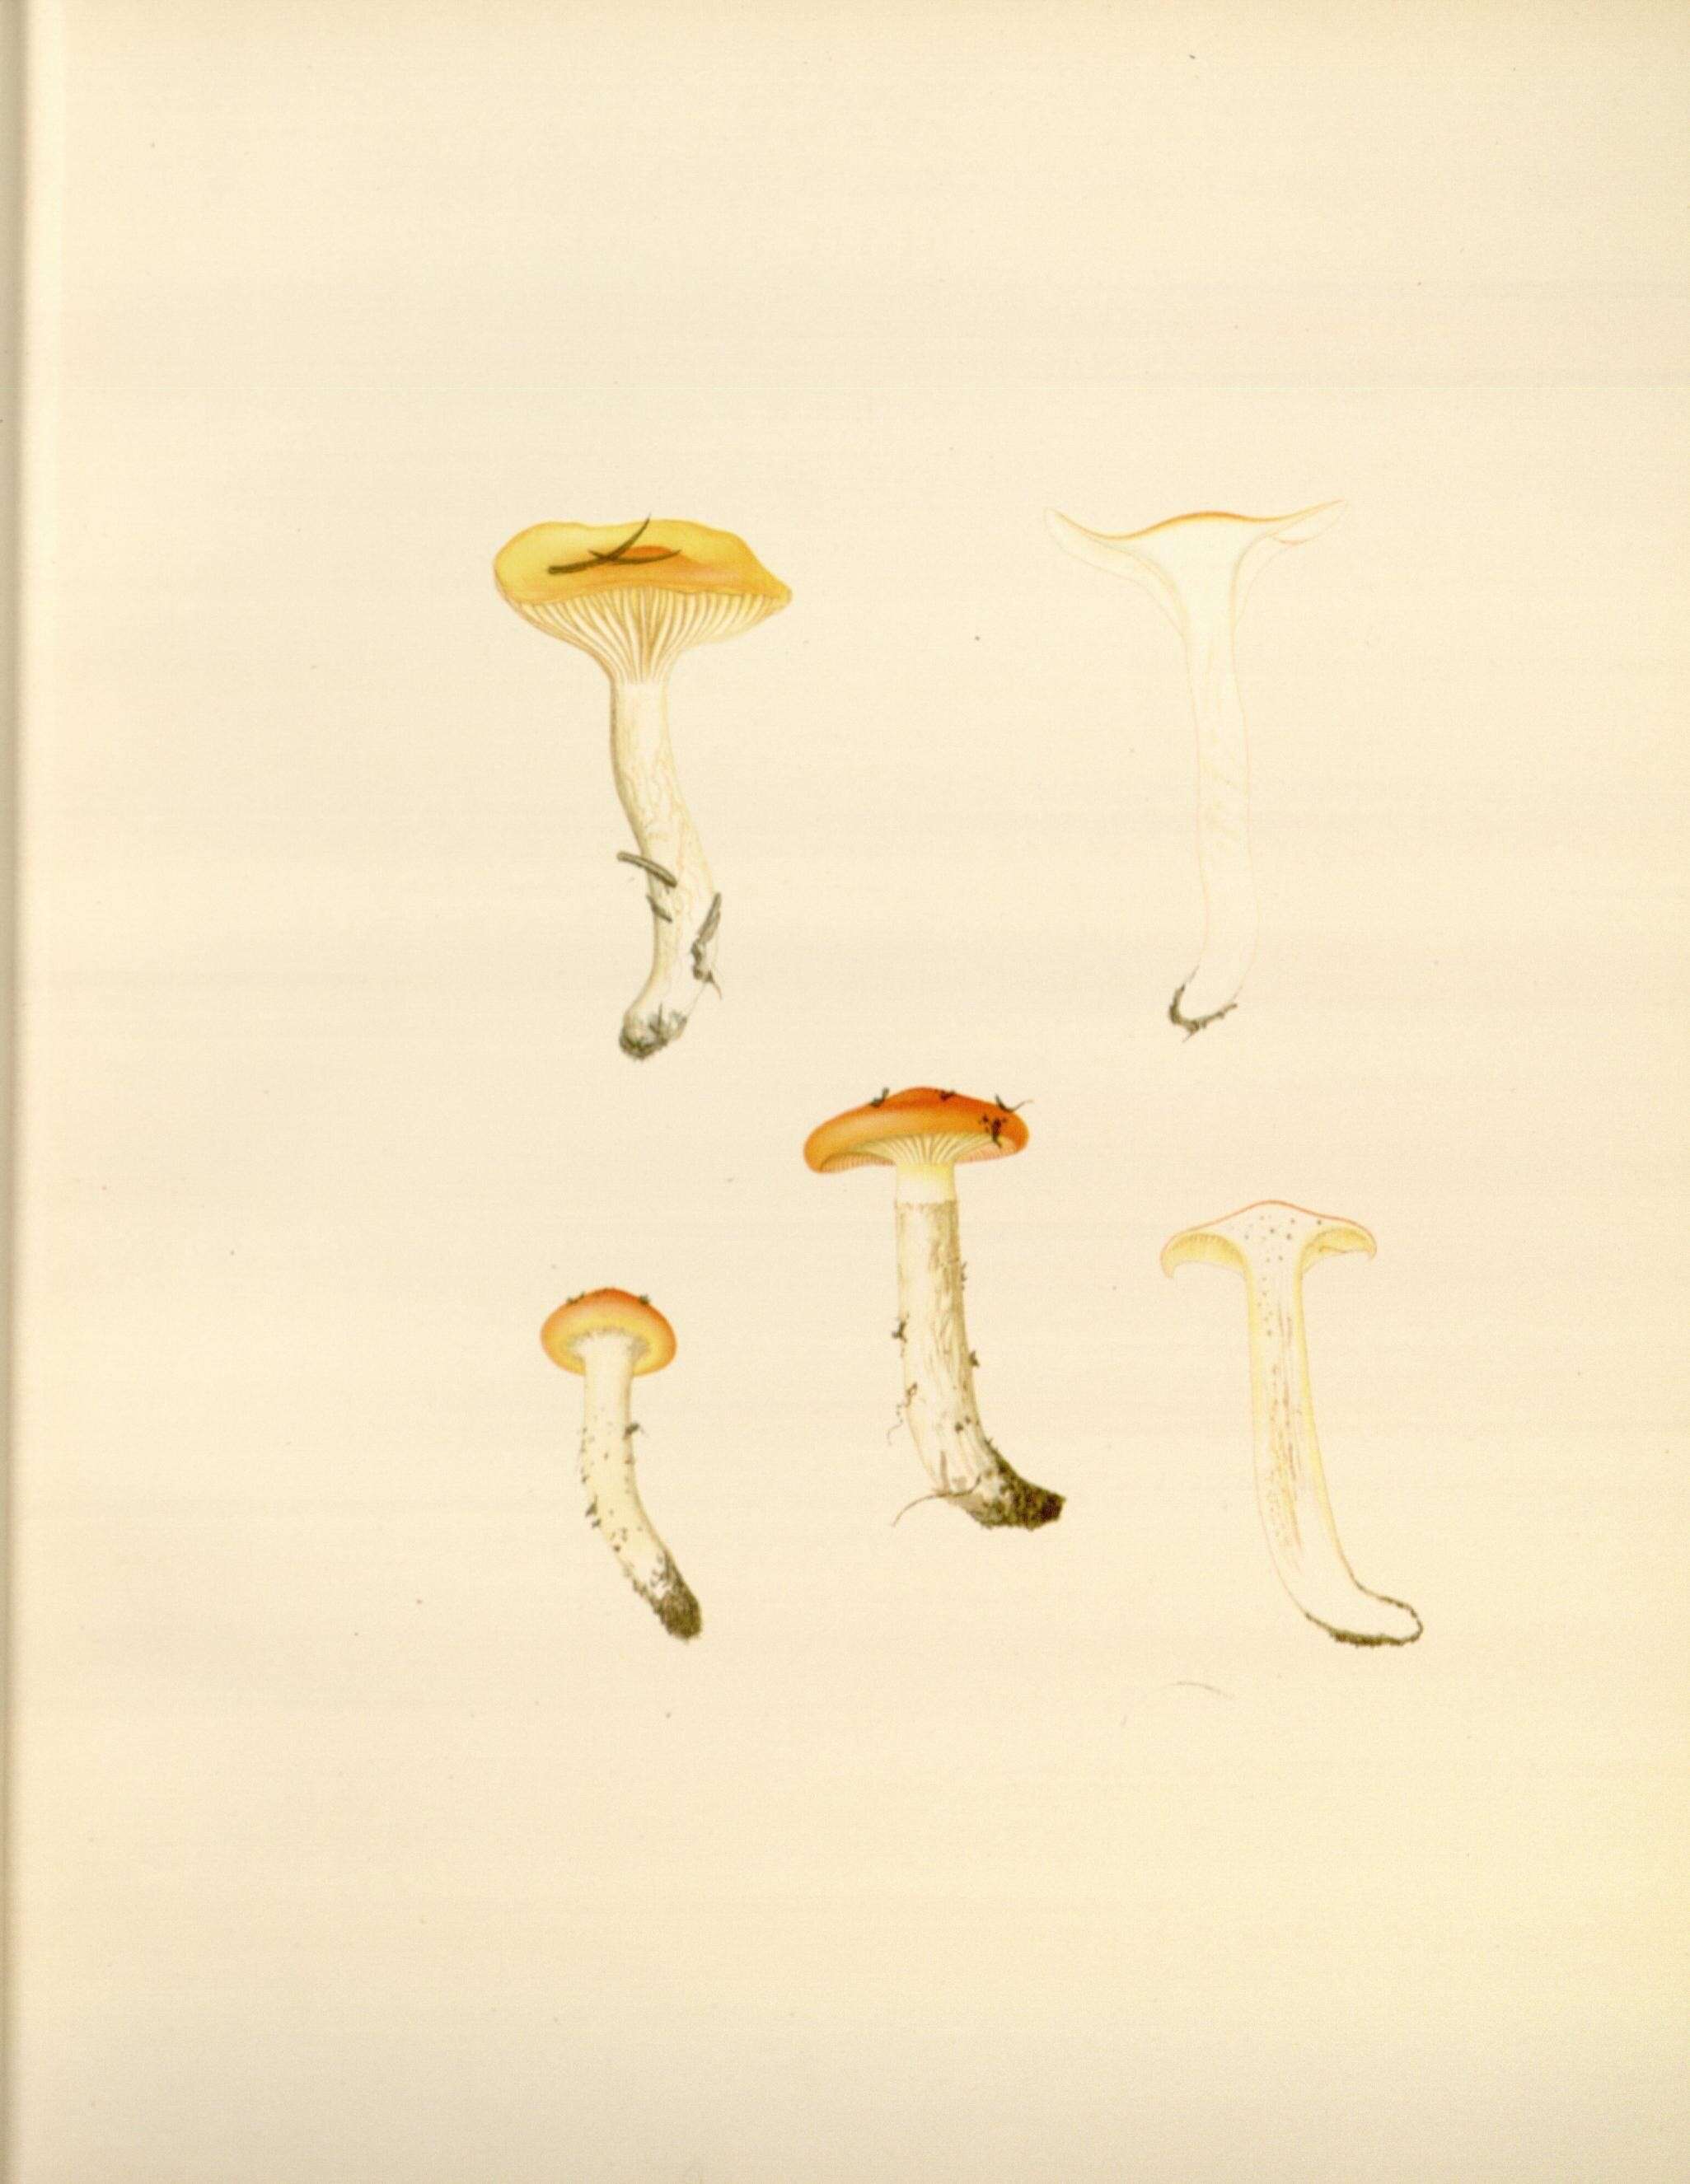 Sivun Hygrophorus speciosus Peck 1878 kuva